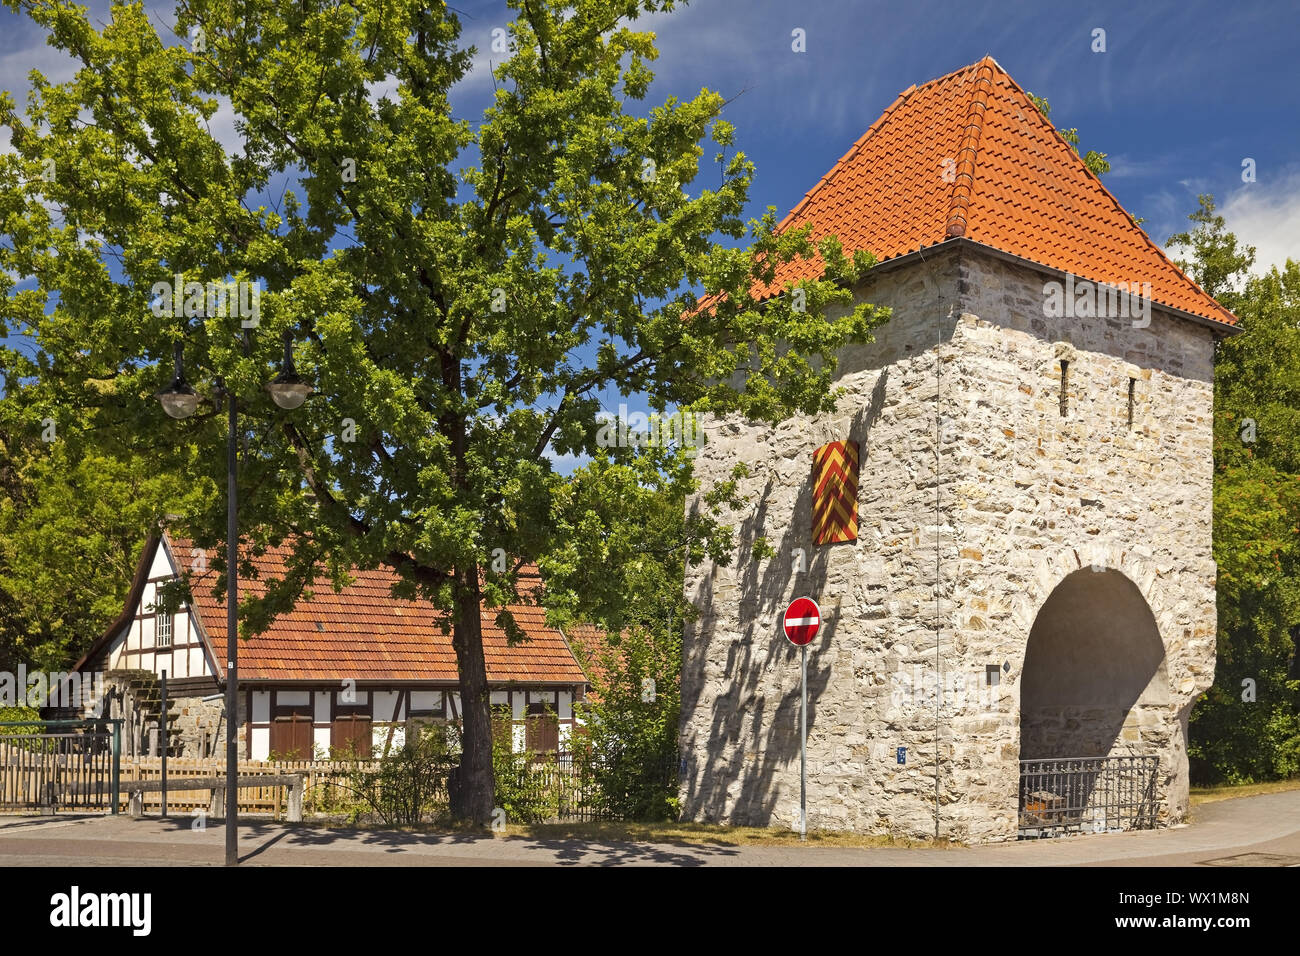 Ex city gate, cosiddetta porta occidentale torre e storico, oilmill Salzkotten, Germania, Europa Foto Stock